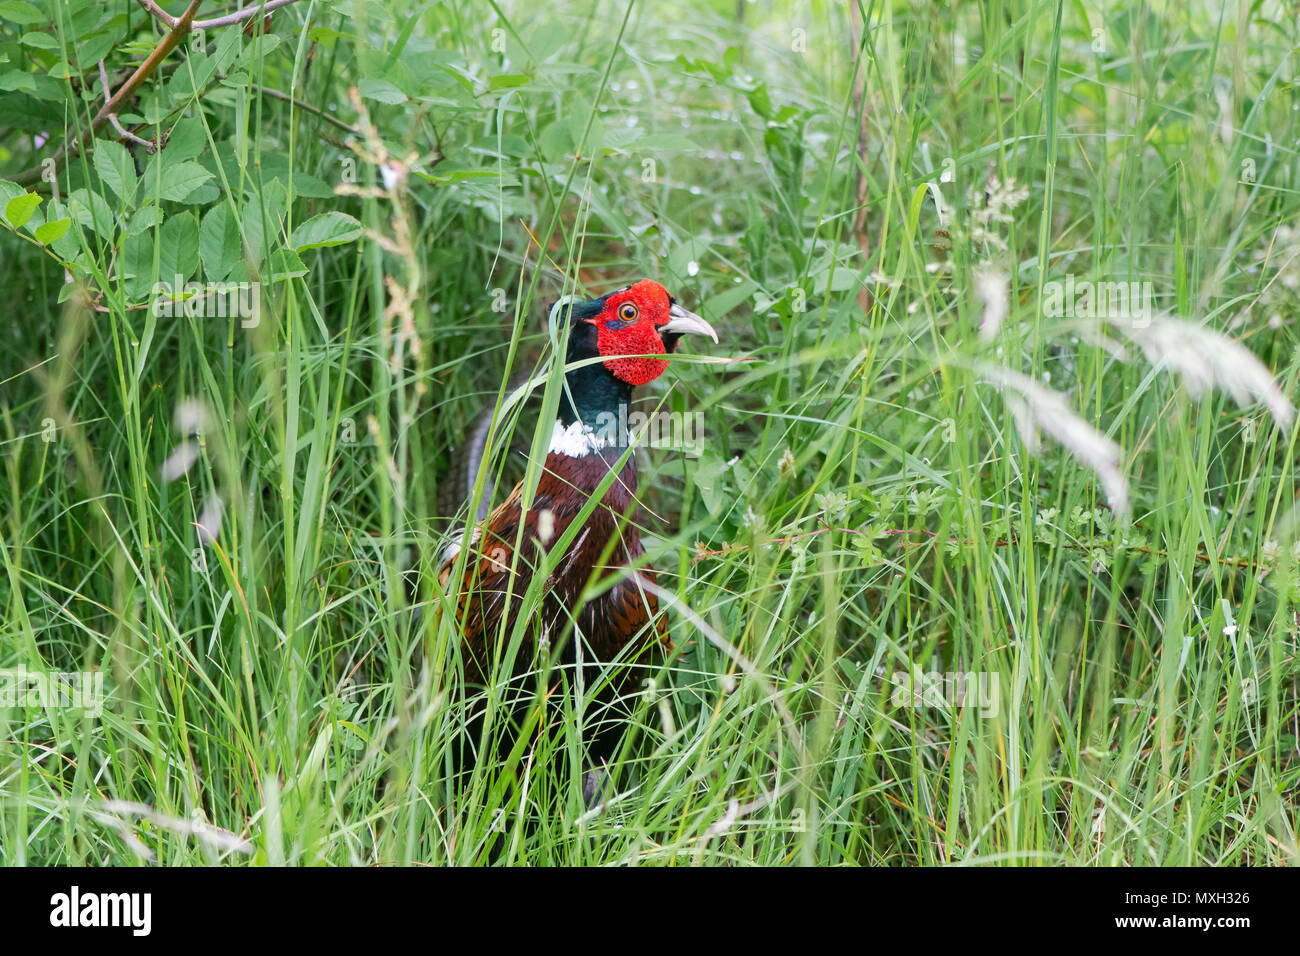 Rubinetto (fagiano Phasianus colchicus) tra l'erba. Gioco maschio uccello della famiglia Fasianidi con il suo caratteristico colore rosso graticcio Foto Stock